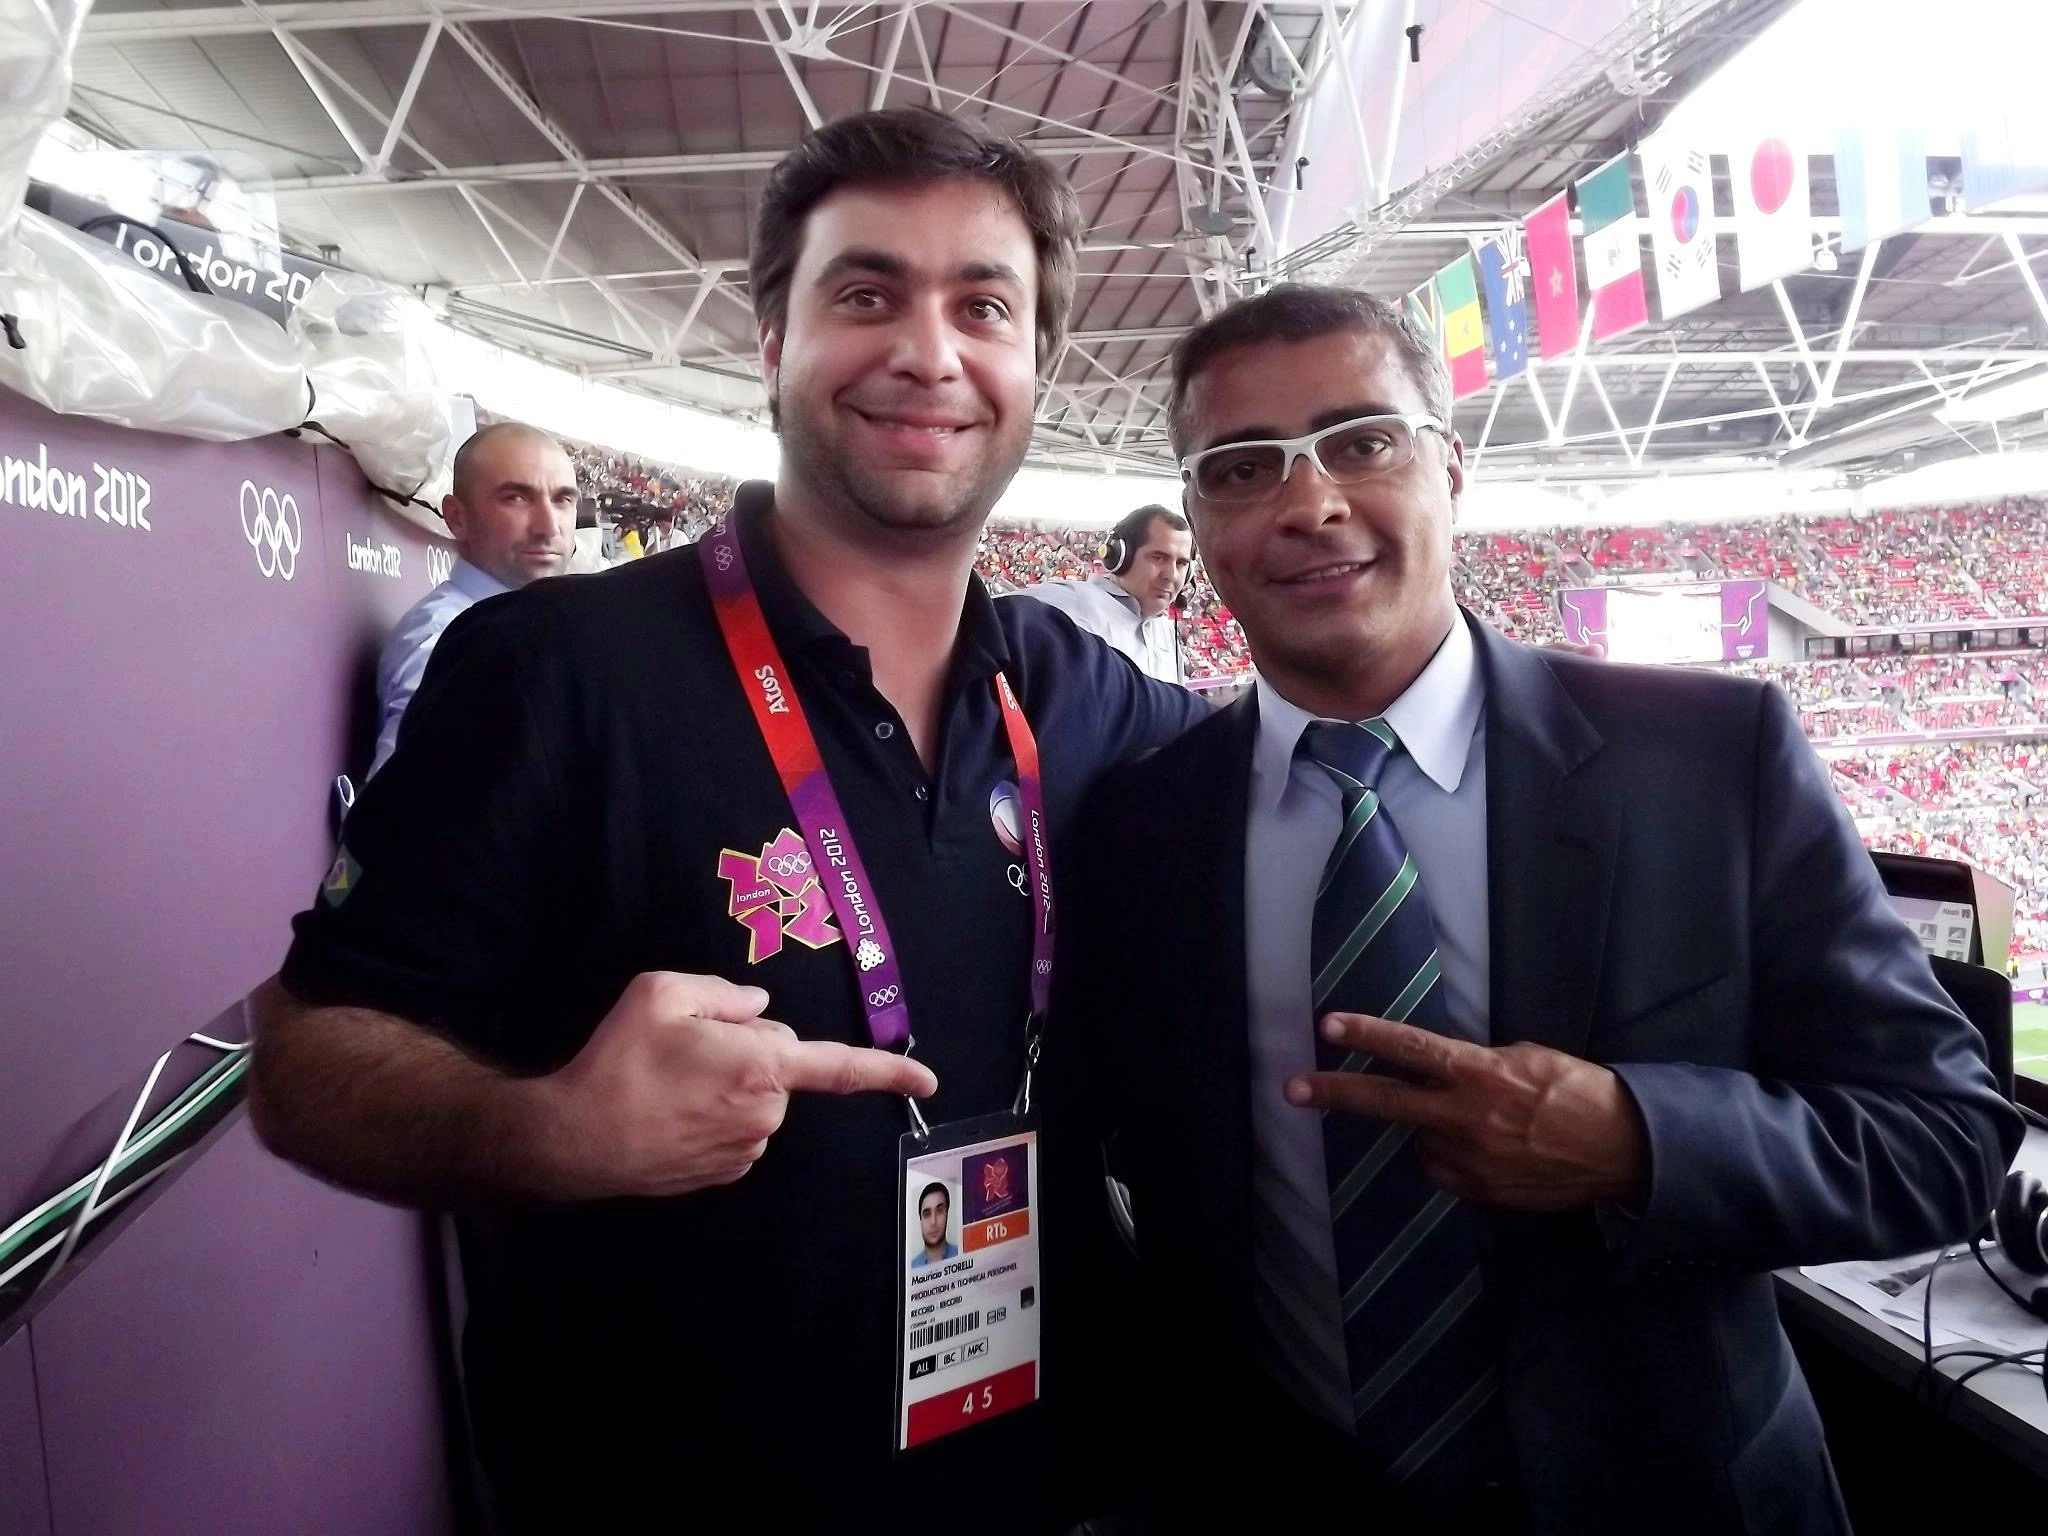 Maurício Storelli e Romário, durante os Jogos Olímpicos de Londres 2012. Foto: Reprodução/Instagram